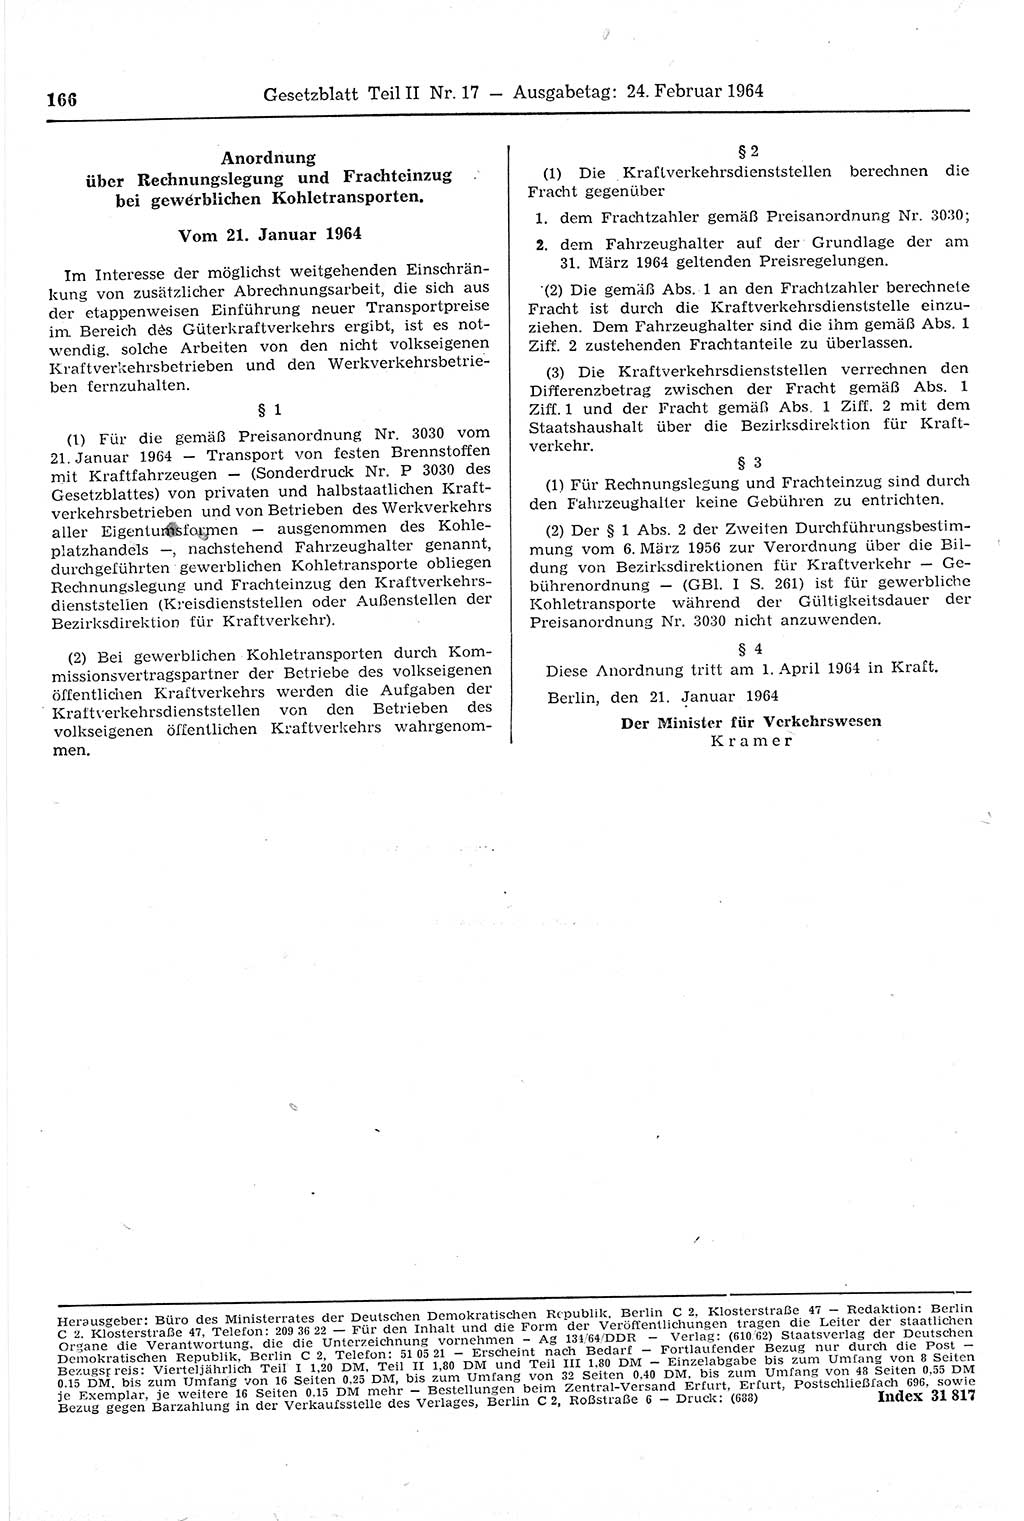 Gesetzblatt (GBl.) der Deutschen Demokratischen Republik (DDR) Teil ⅠⅠ 1964, Seite 166 (GBl. DDR ⅠⅠ 1964, S. 166)